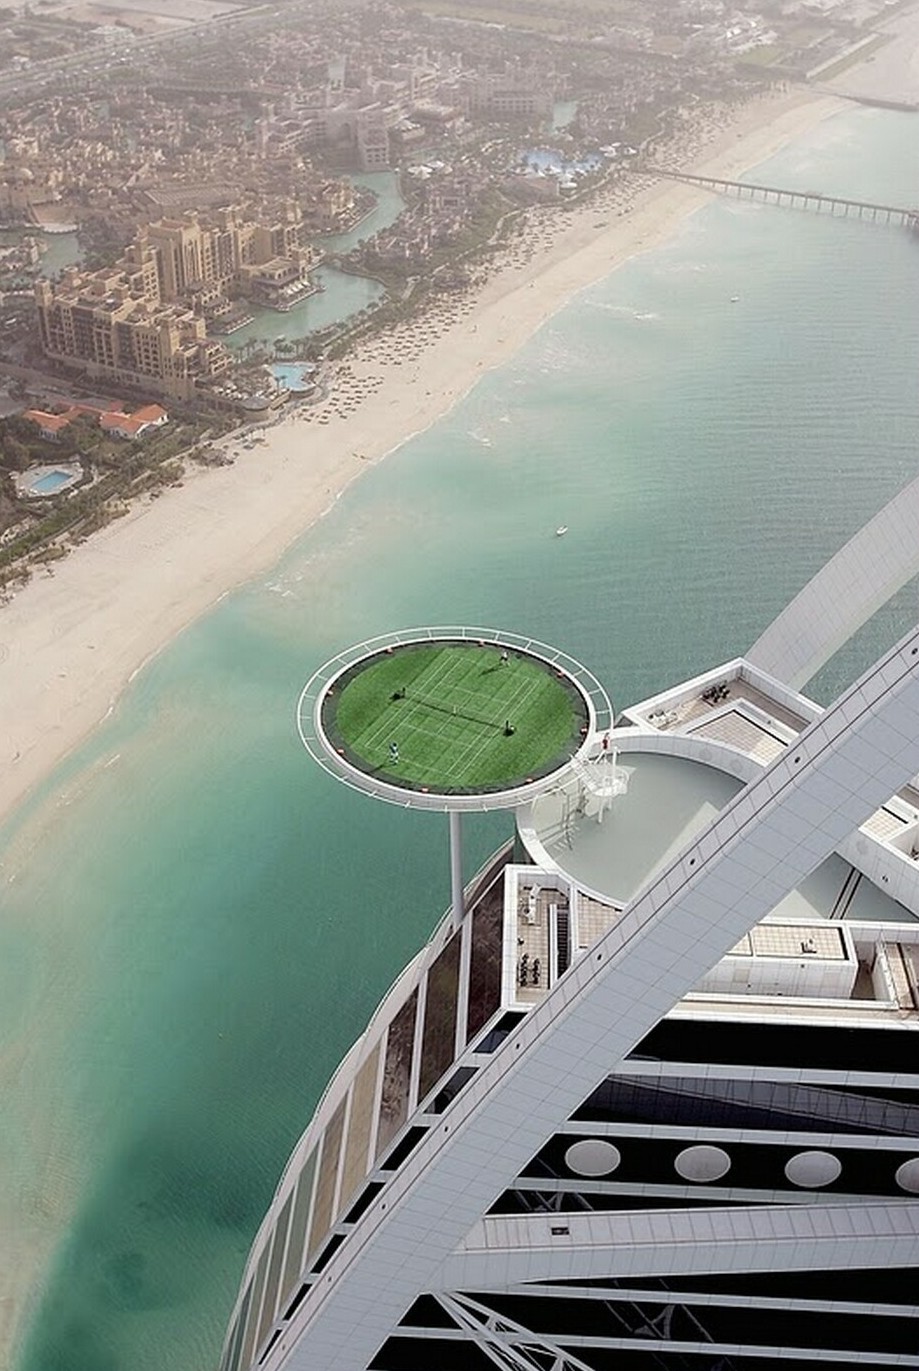 12. Да, ваши глаза вас не обманывают! Это самый высочайший теннисный корт на вершине 4-ого по высоте отеля "Бурдж аль-Араб" в Дубаи